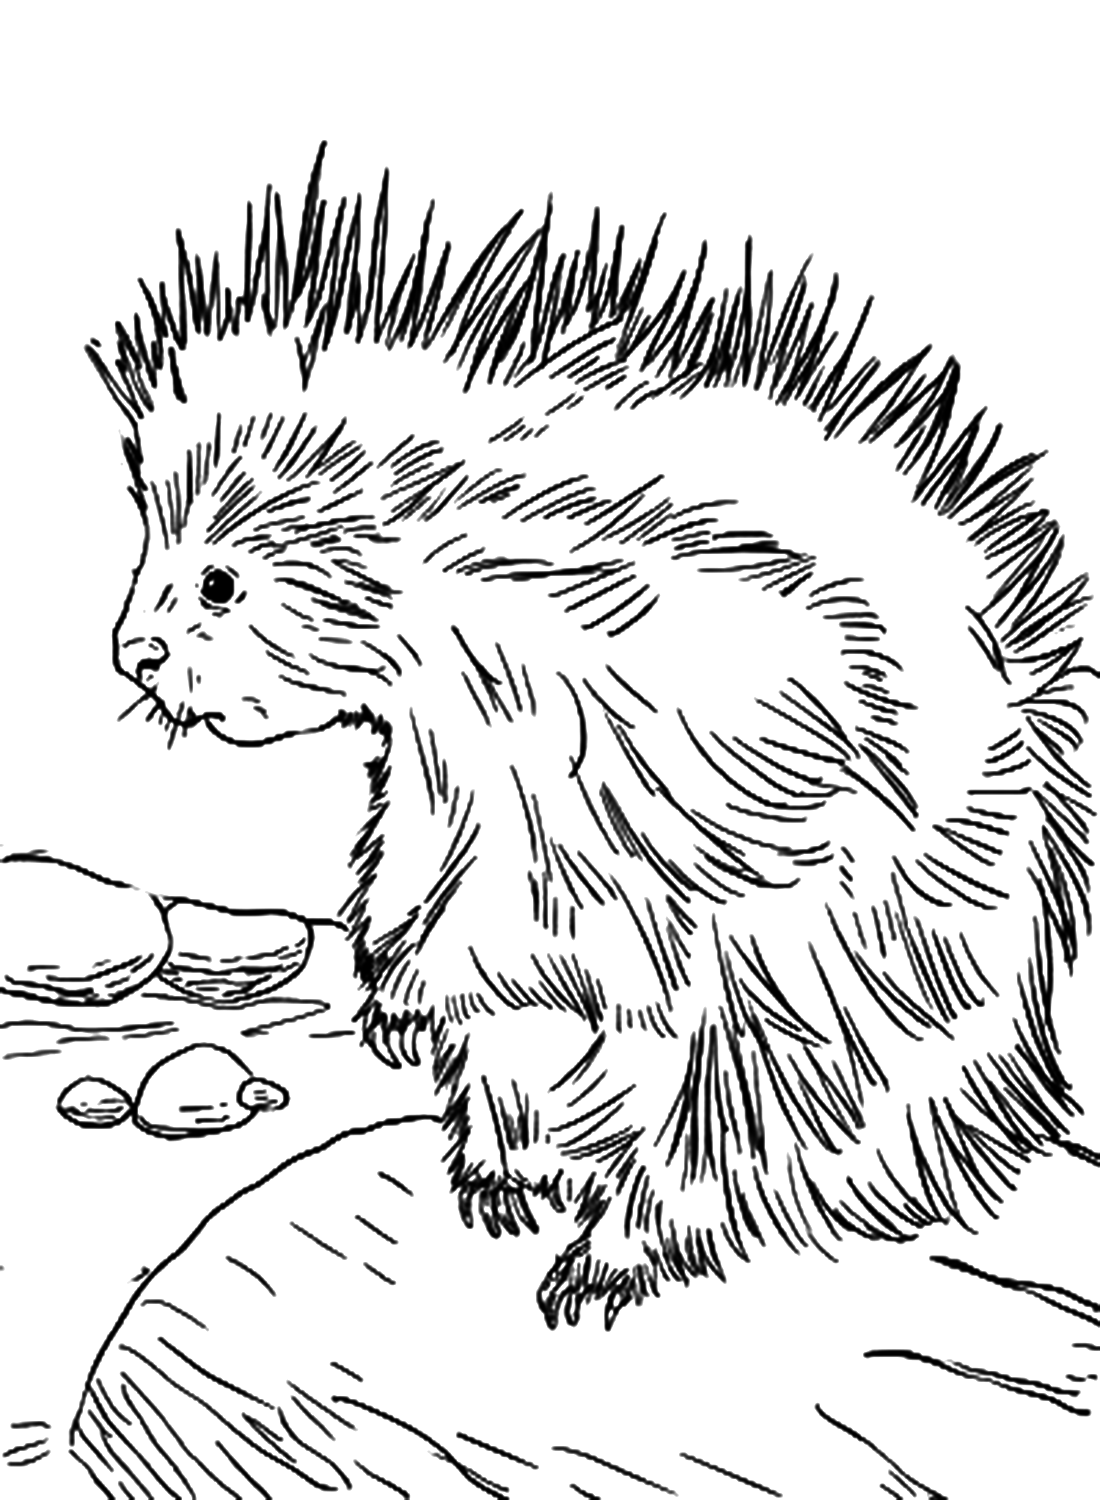 Милая раскраска дикобраза для взрослых от Porcupine